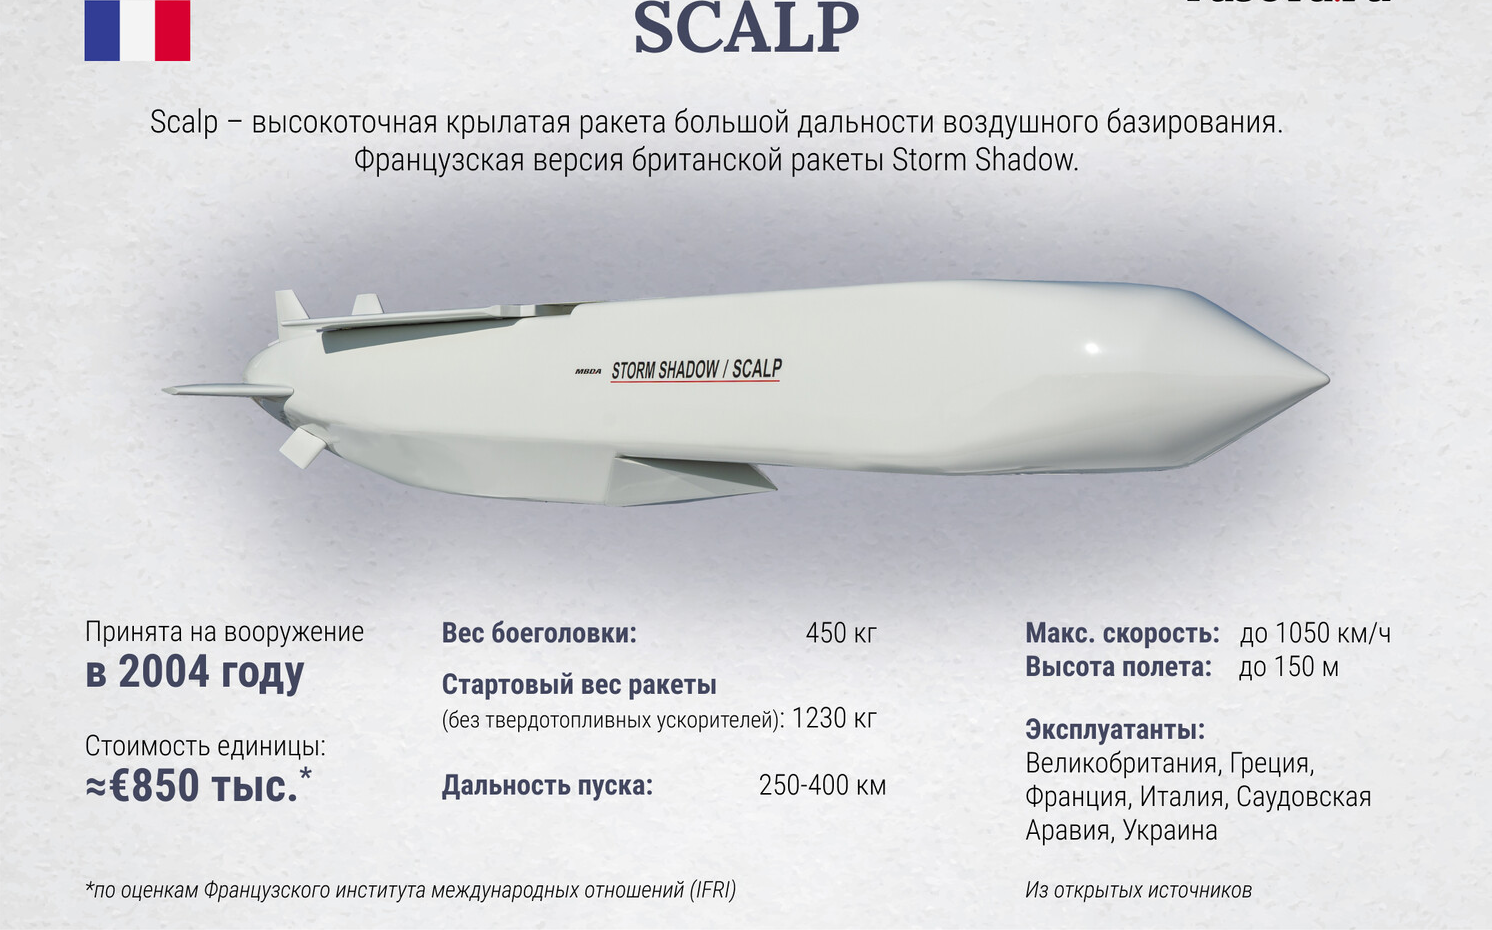 Ракеты шторм шедоу дальность. Крылатые ракеты Scalp характеристики. Крылатая ракета Storm Shadow / Scalp. Французские ракеты Scalp. Storm Shadow ракета дальность.